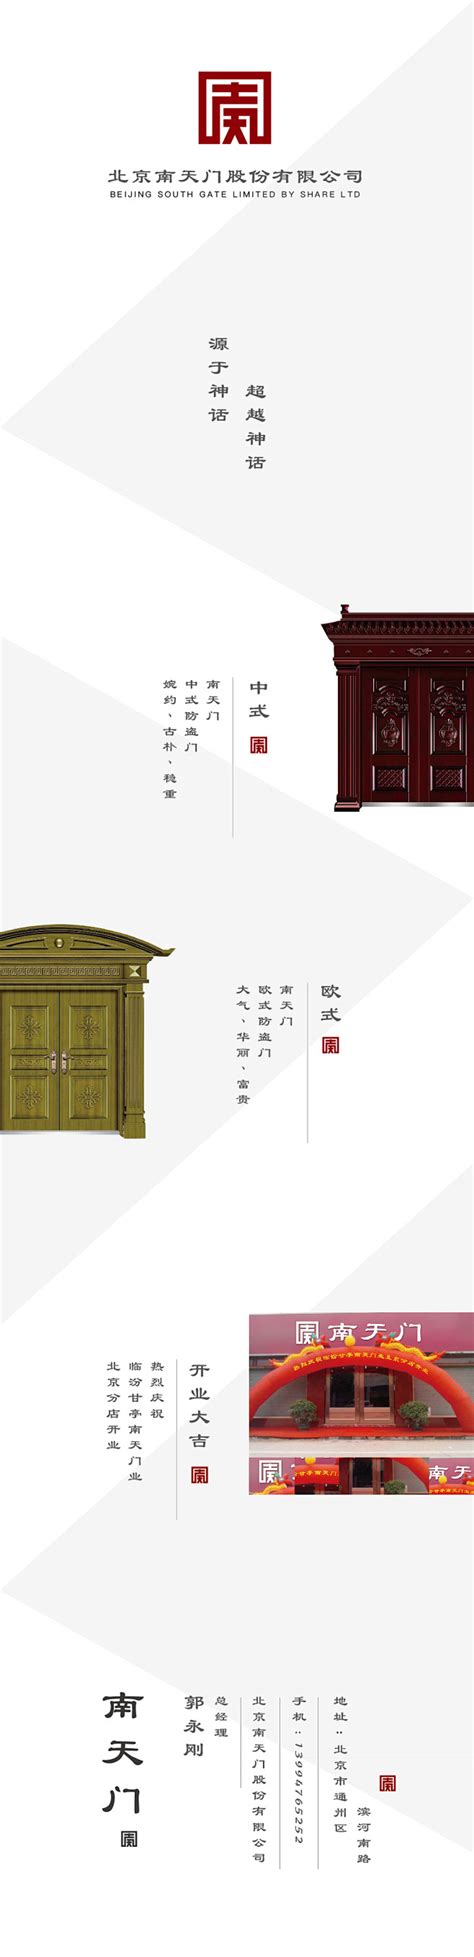 上海网站设计公司_网站建设_企业网站设计_网站制作公司_上海品牌设计-上海助腾科技官网